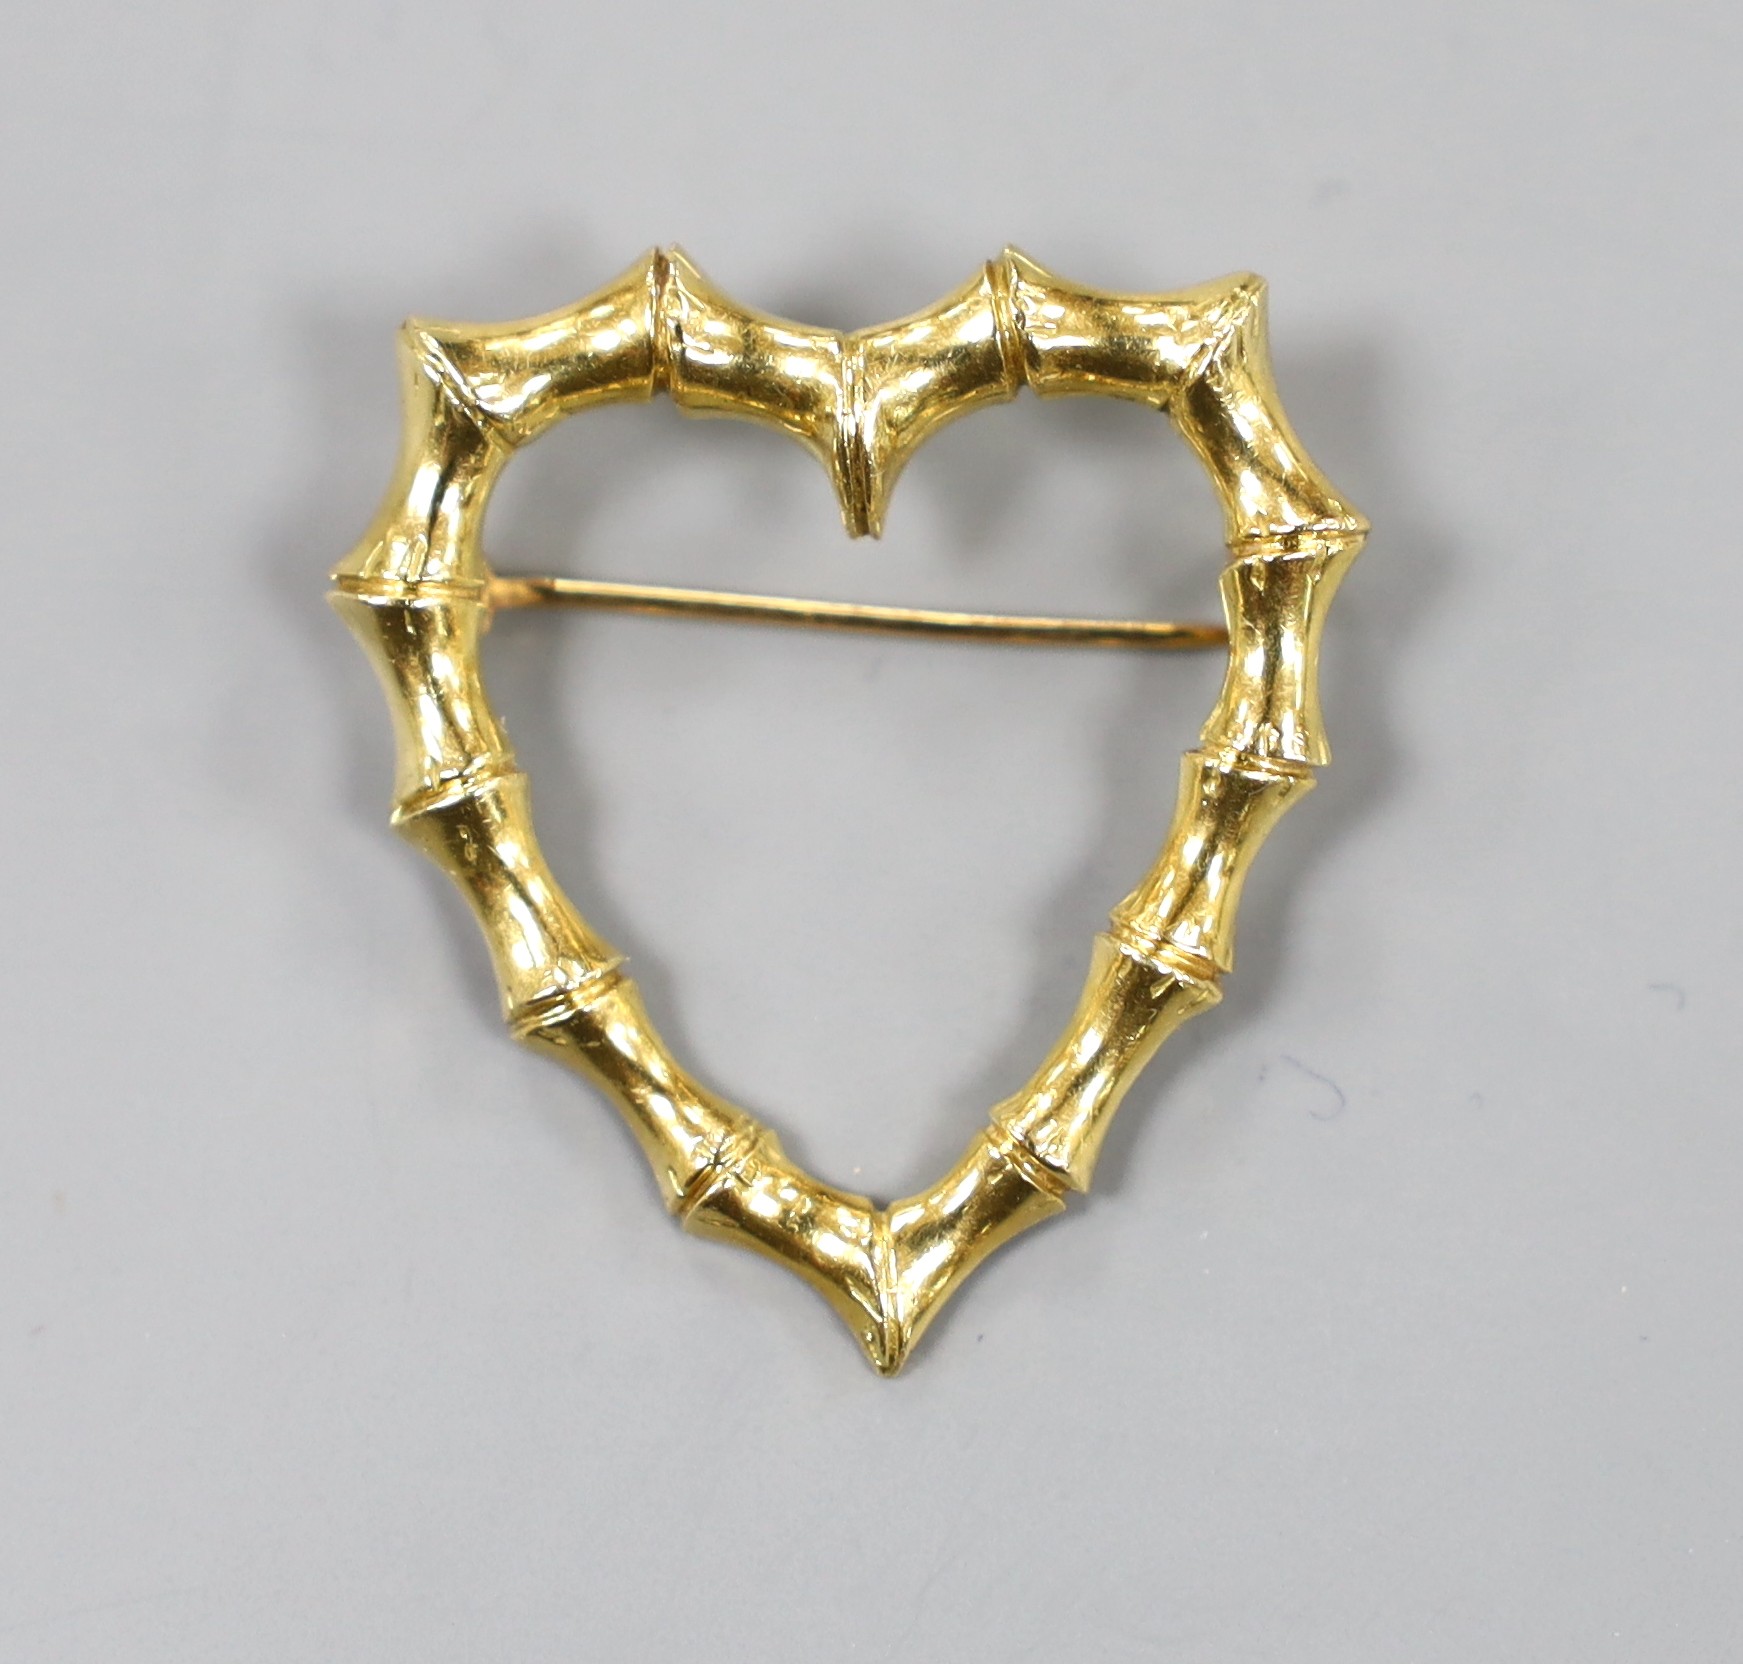 A modern 18k Tiffany & Co heart shaped openwork brooch, 31mm, 4.9 grams.